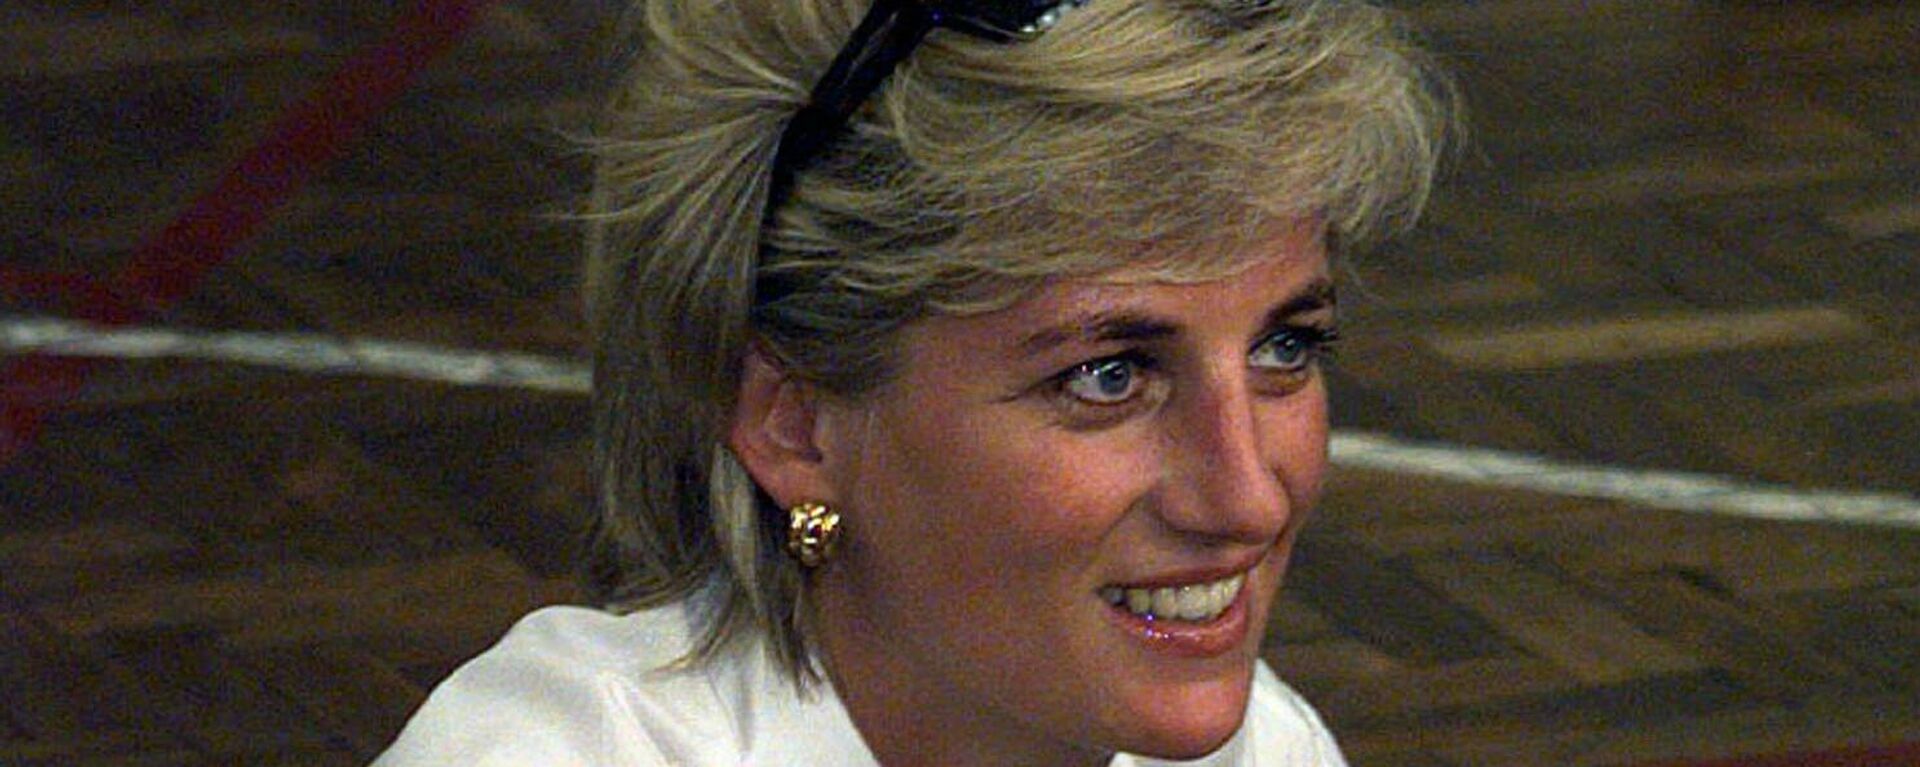 La princesa Diana en agosto de 1997 - Sputnik Mundo, 1920, 23.06.2021